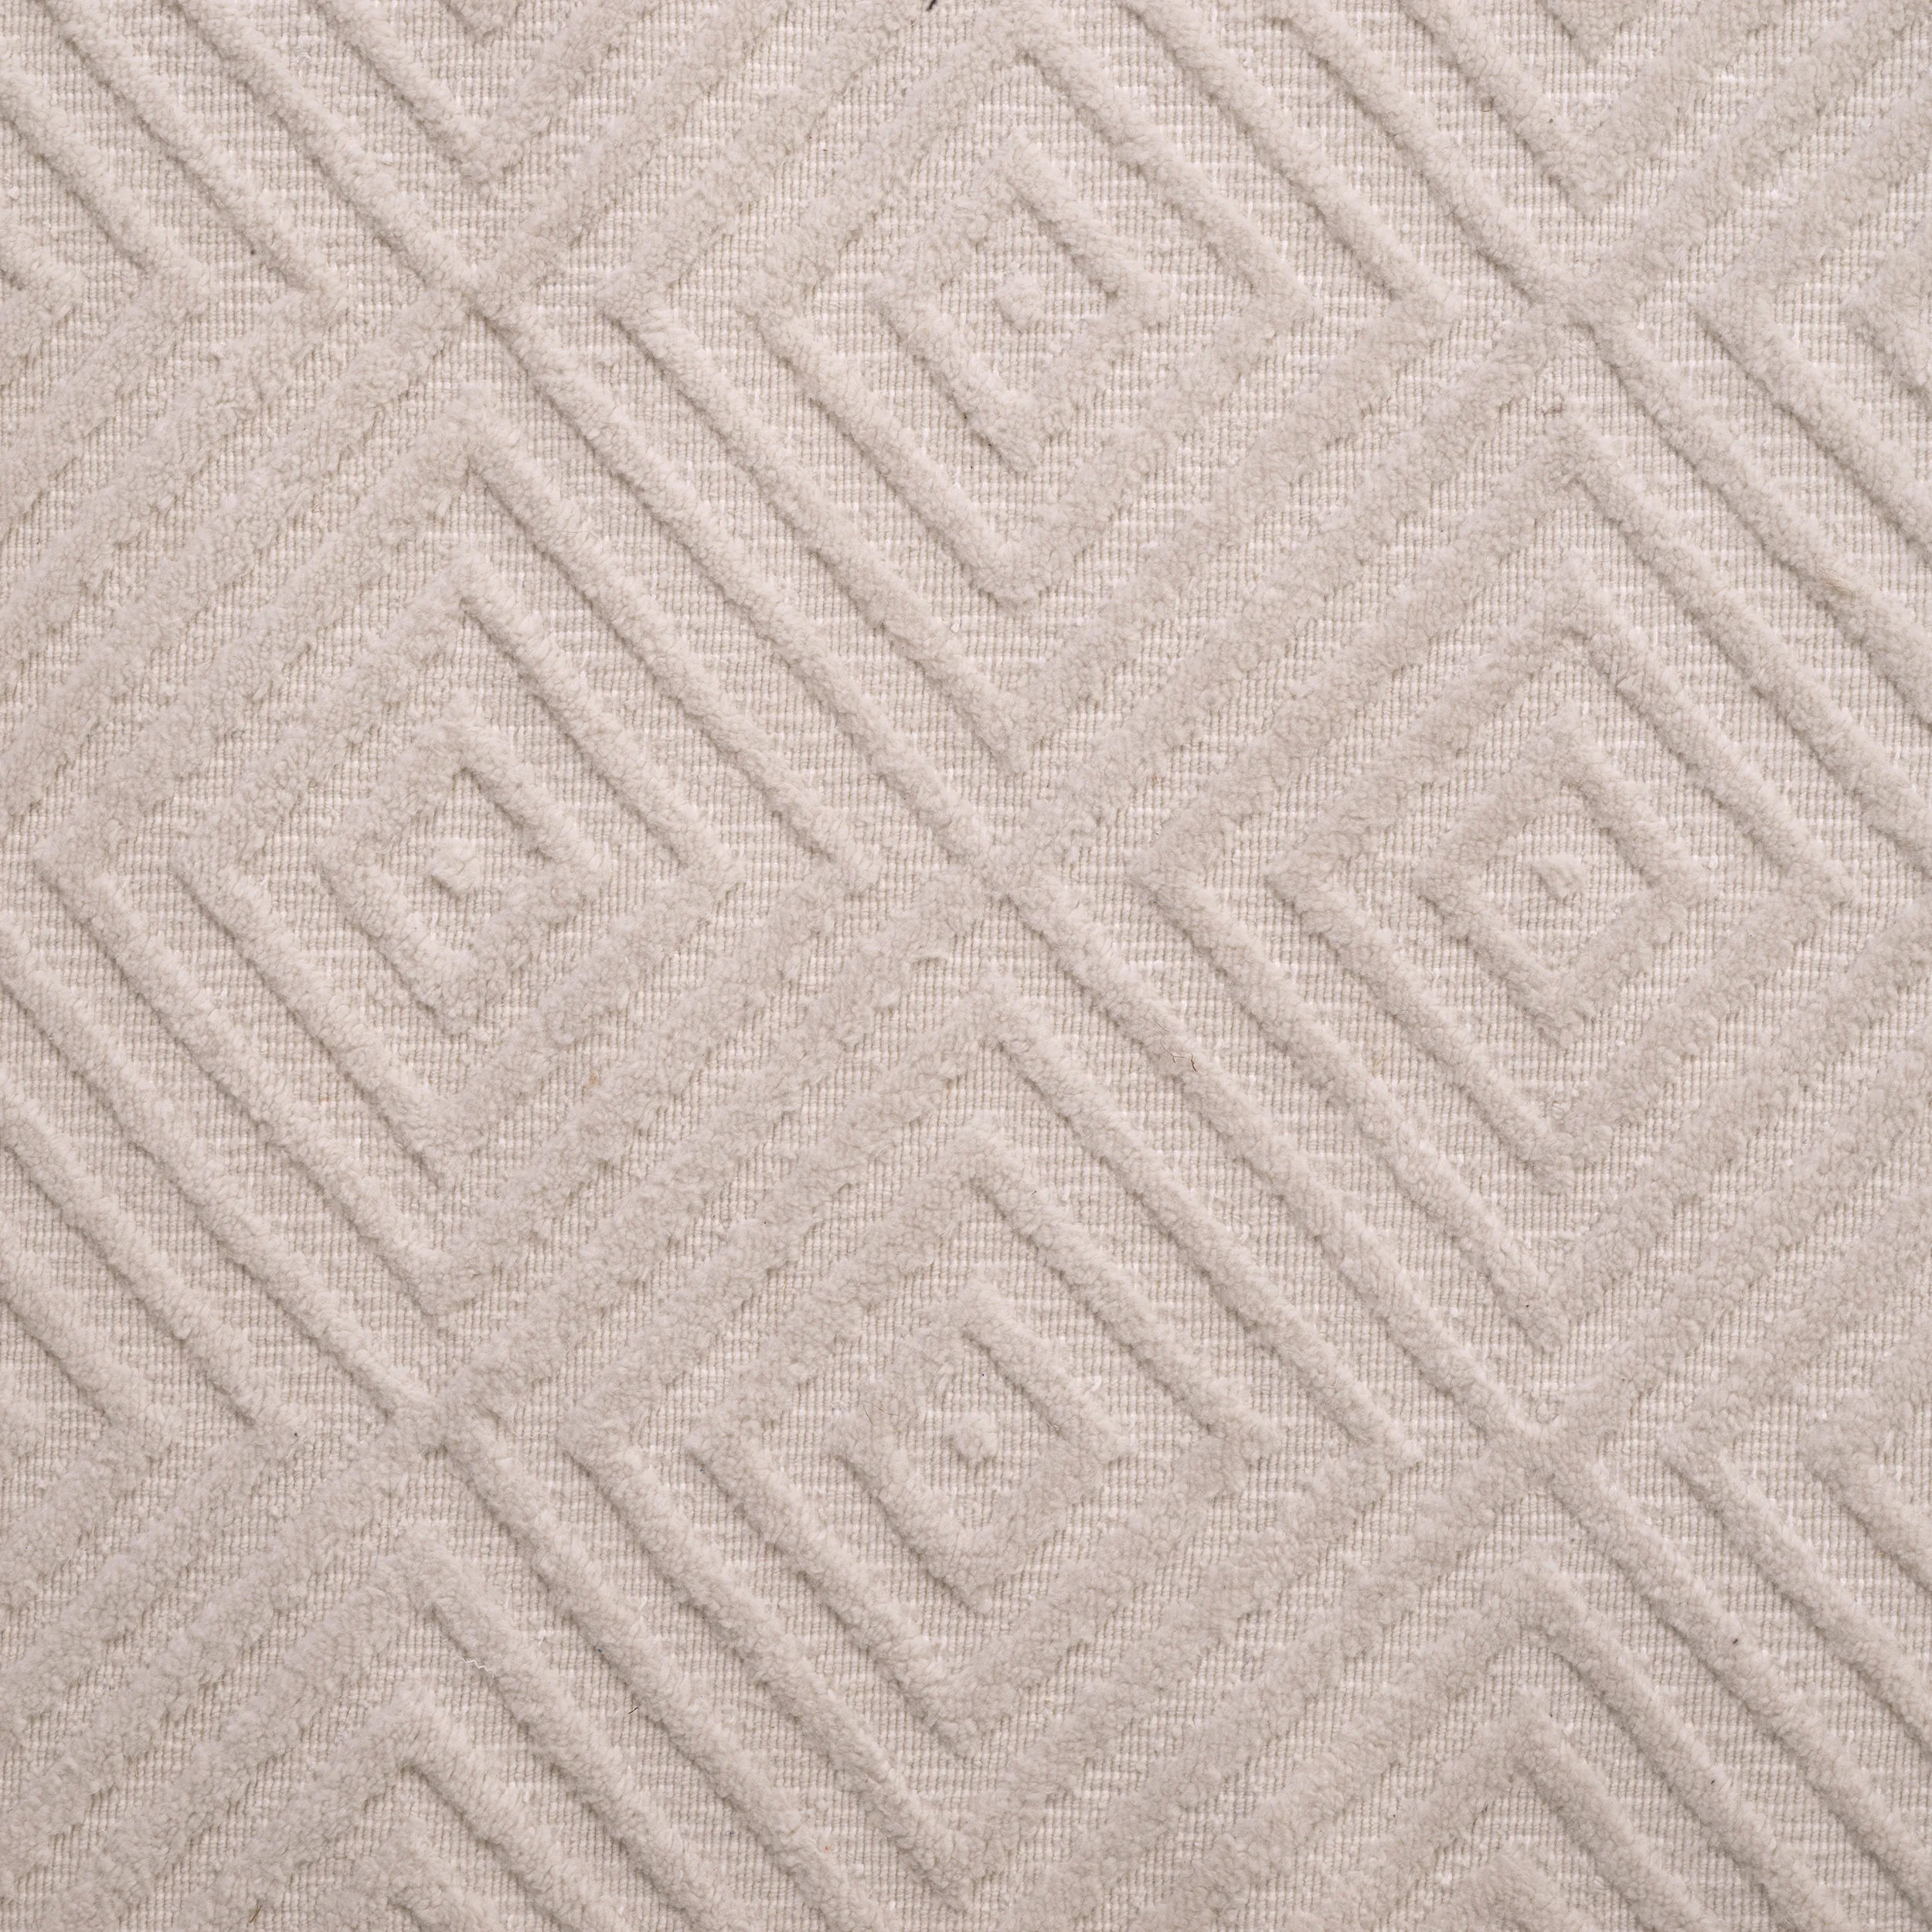 Linara Outdoor Carpet beige 300x400 Eichholtz-117032-21id